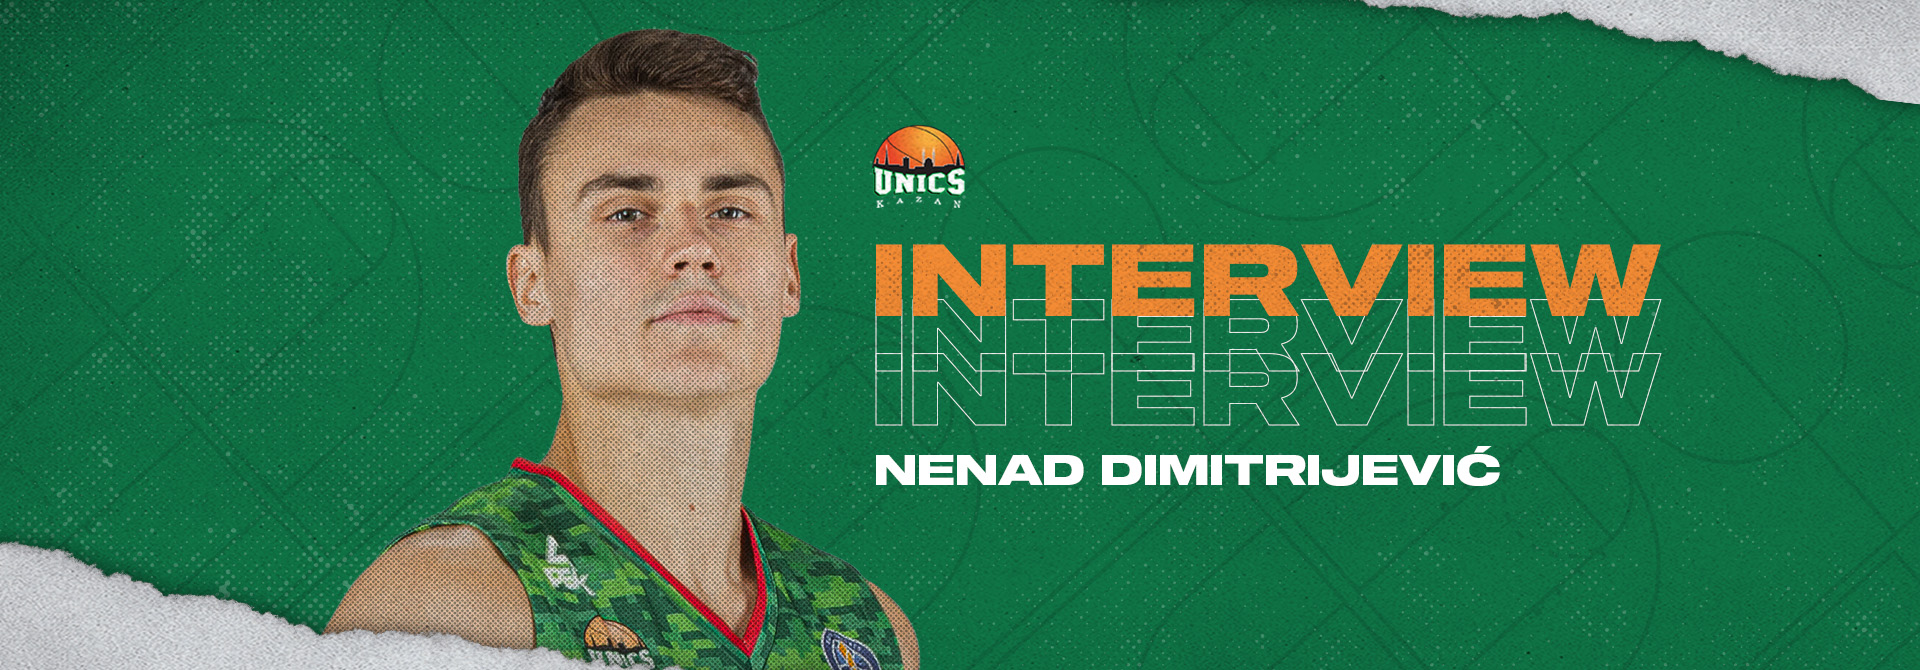 Ненад Димитриевич: «Перейти в УНИКС было лучшим баскетбольным решением для меня»